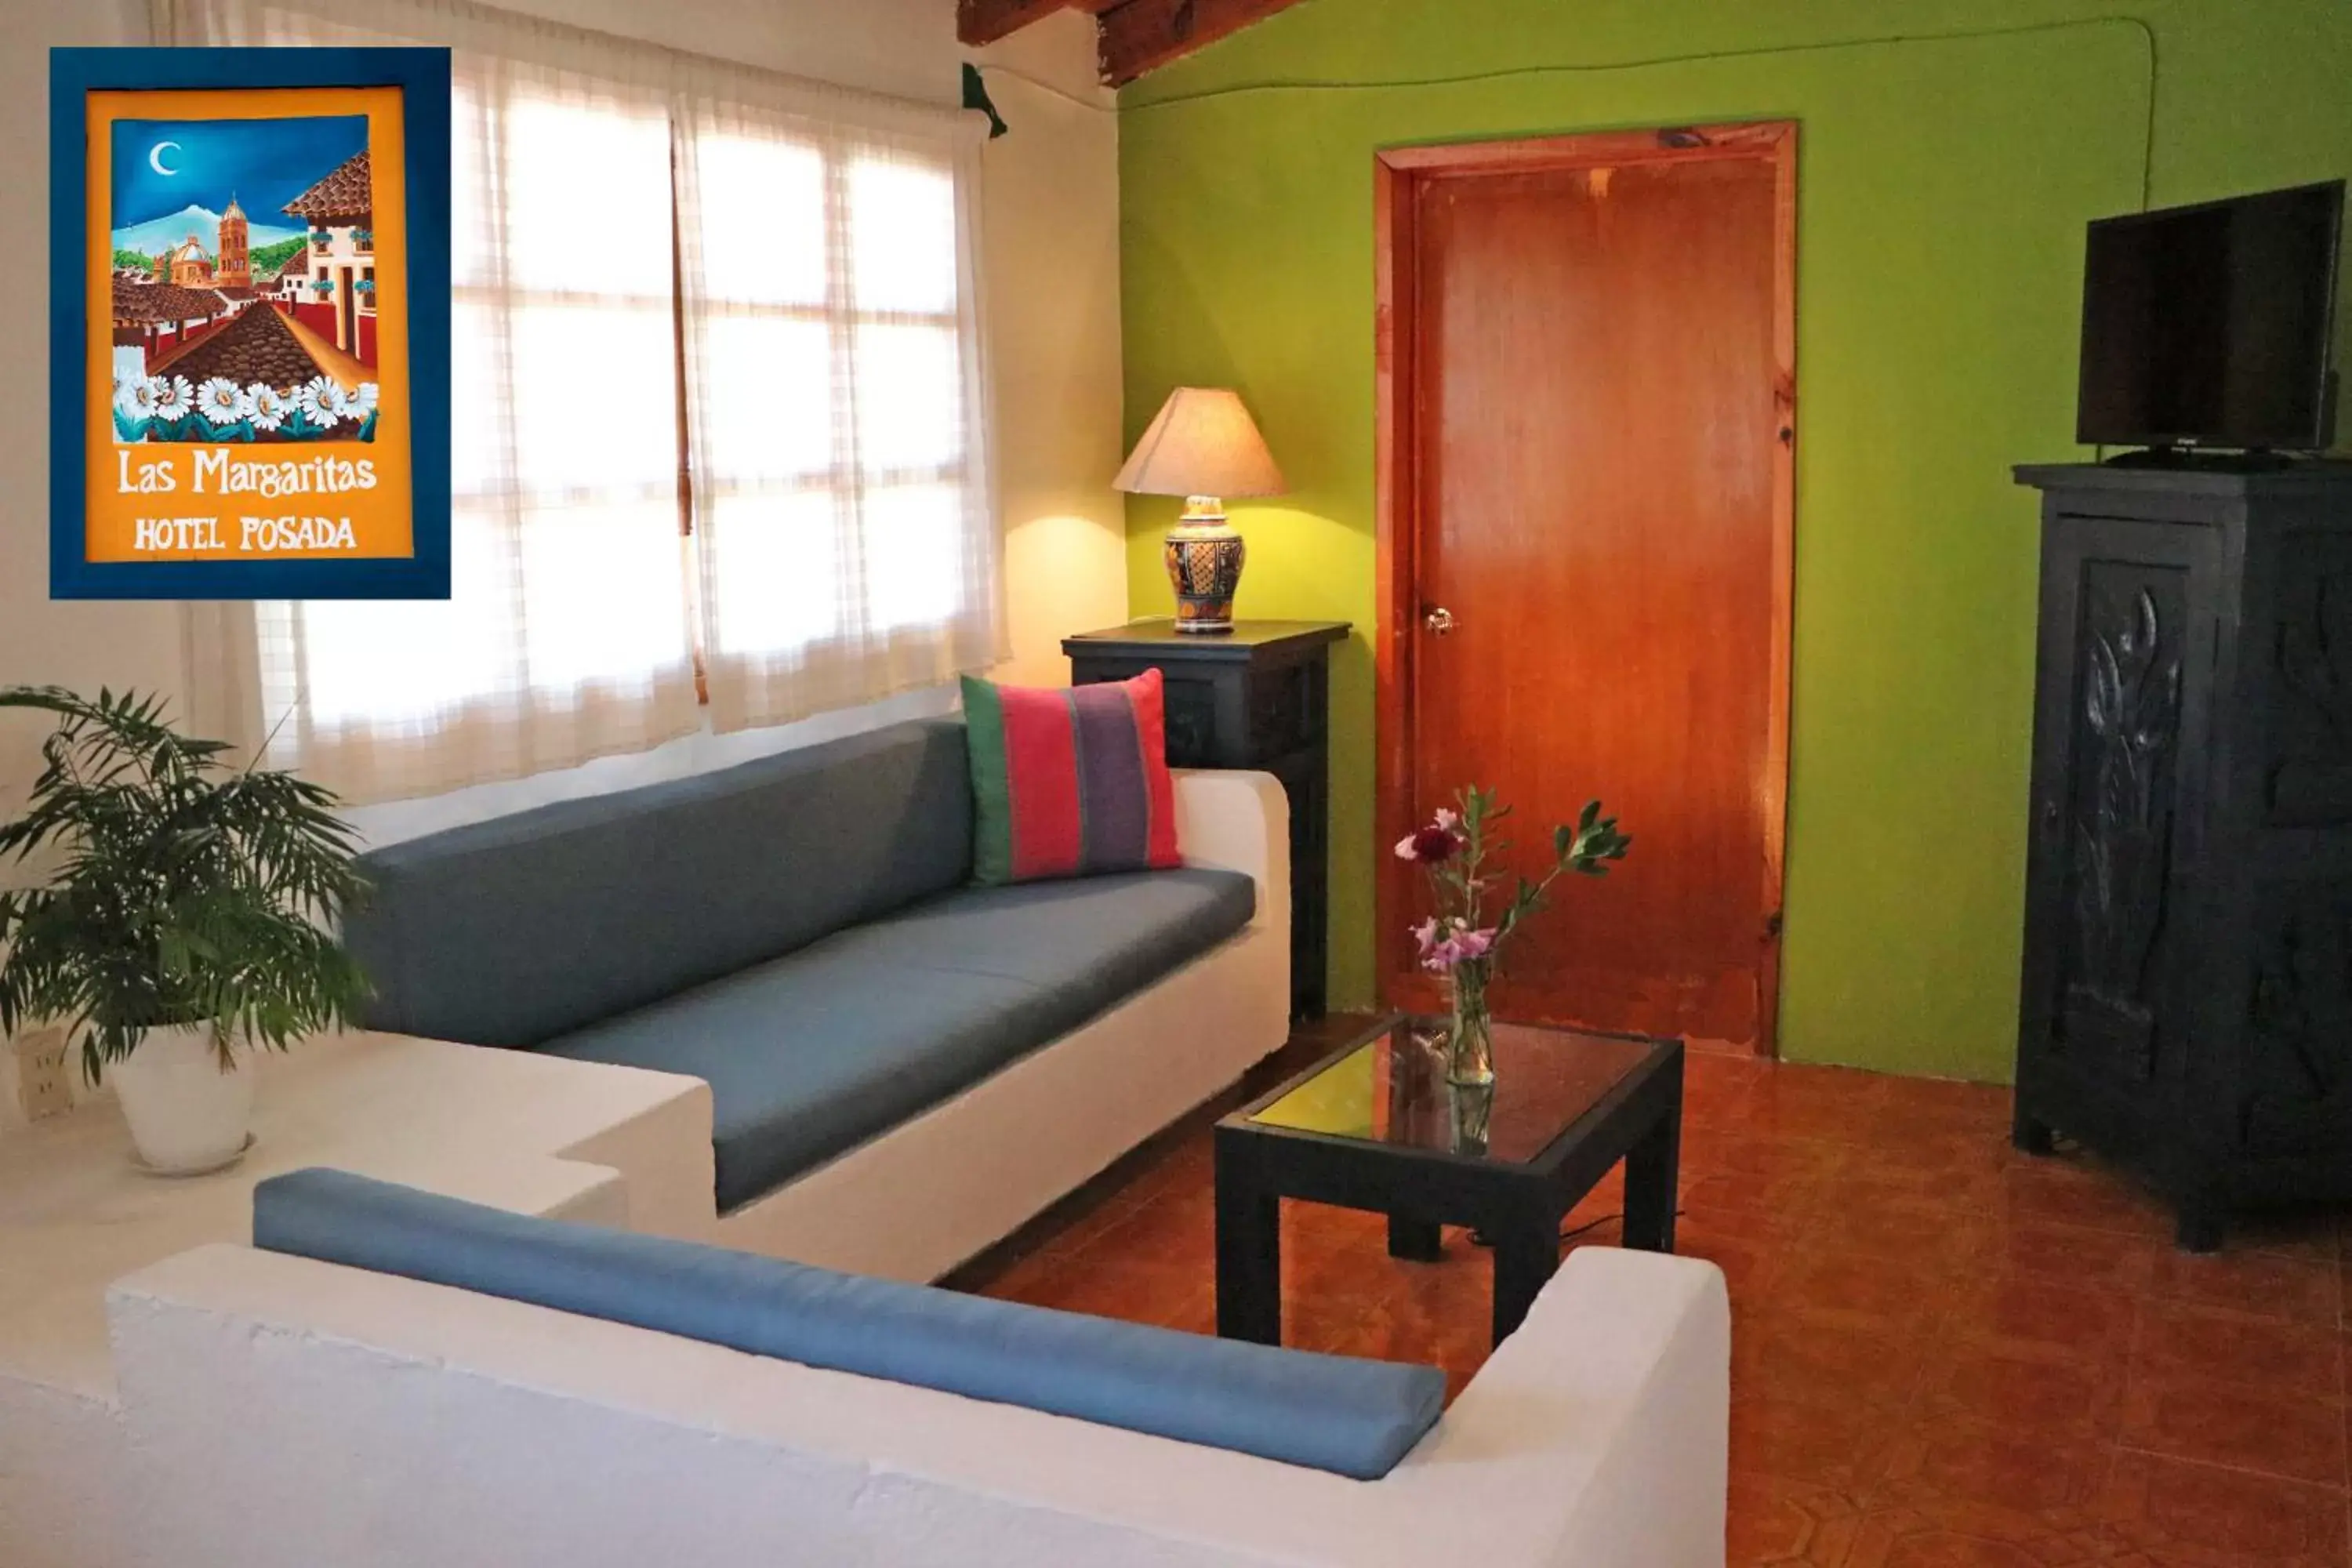 Decorative detail, Seating Area in Las Margaritas Hotel Posada